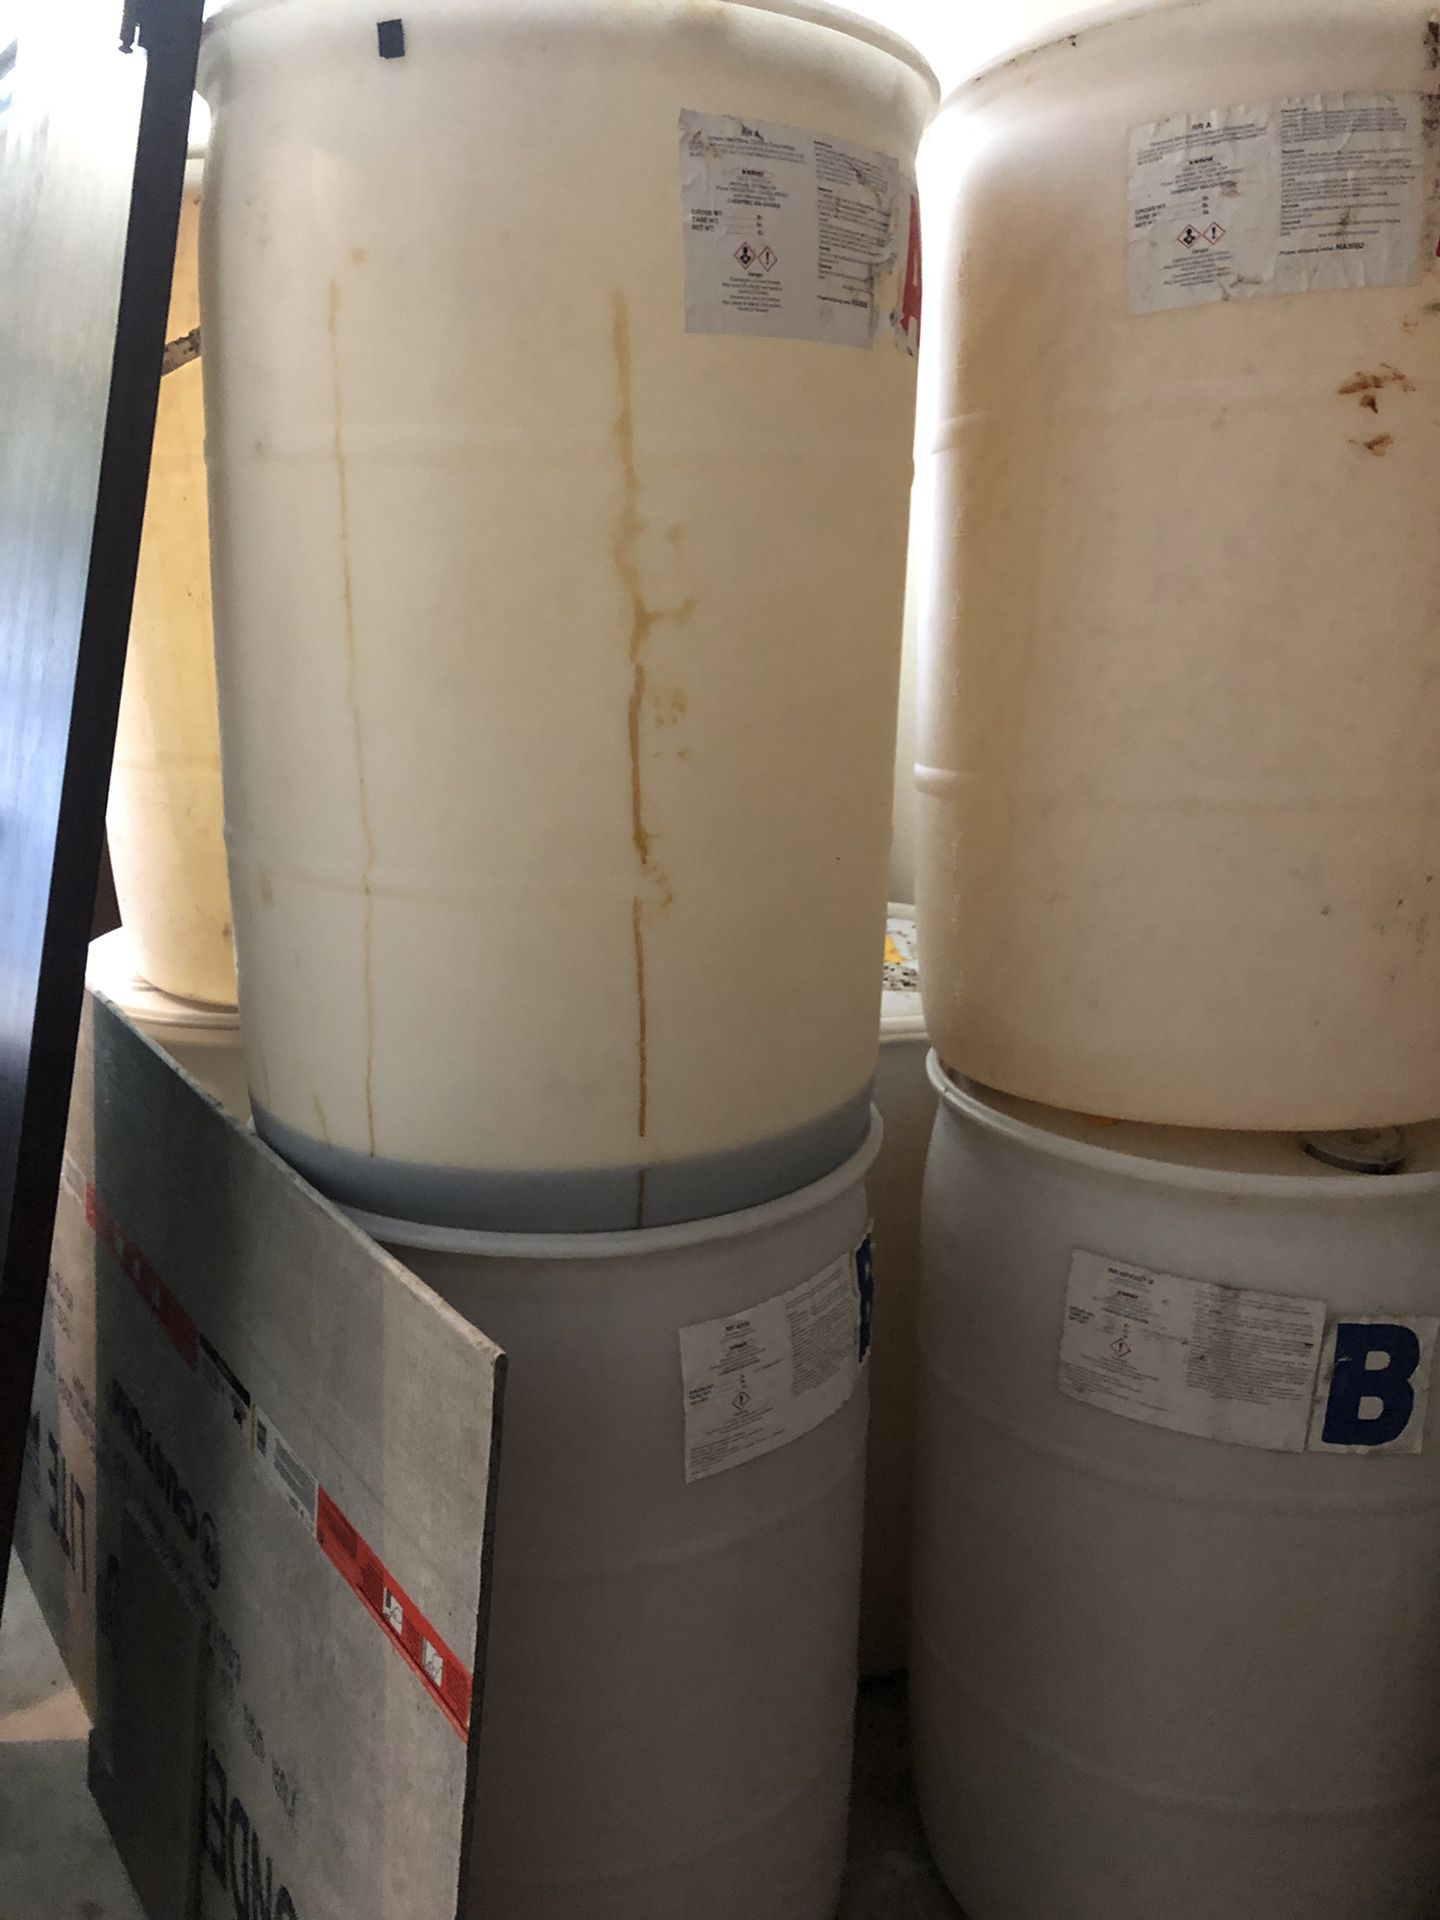 50 gallon drum barrels